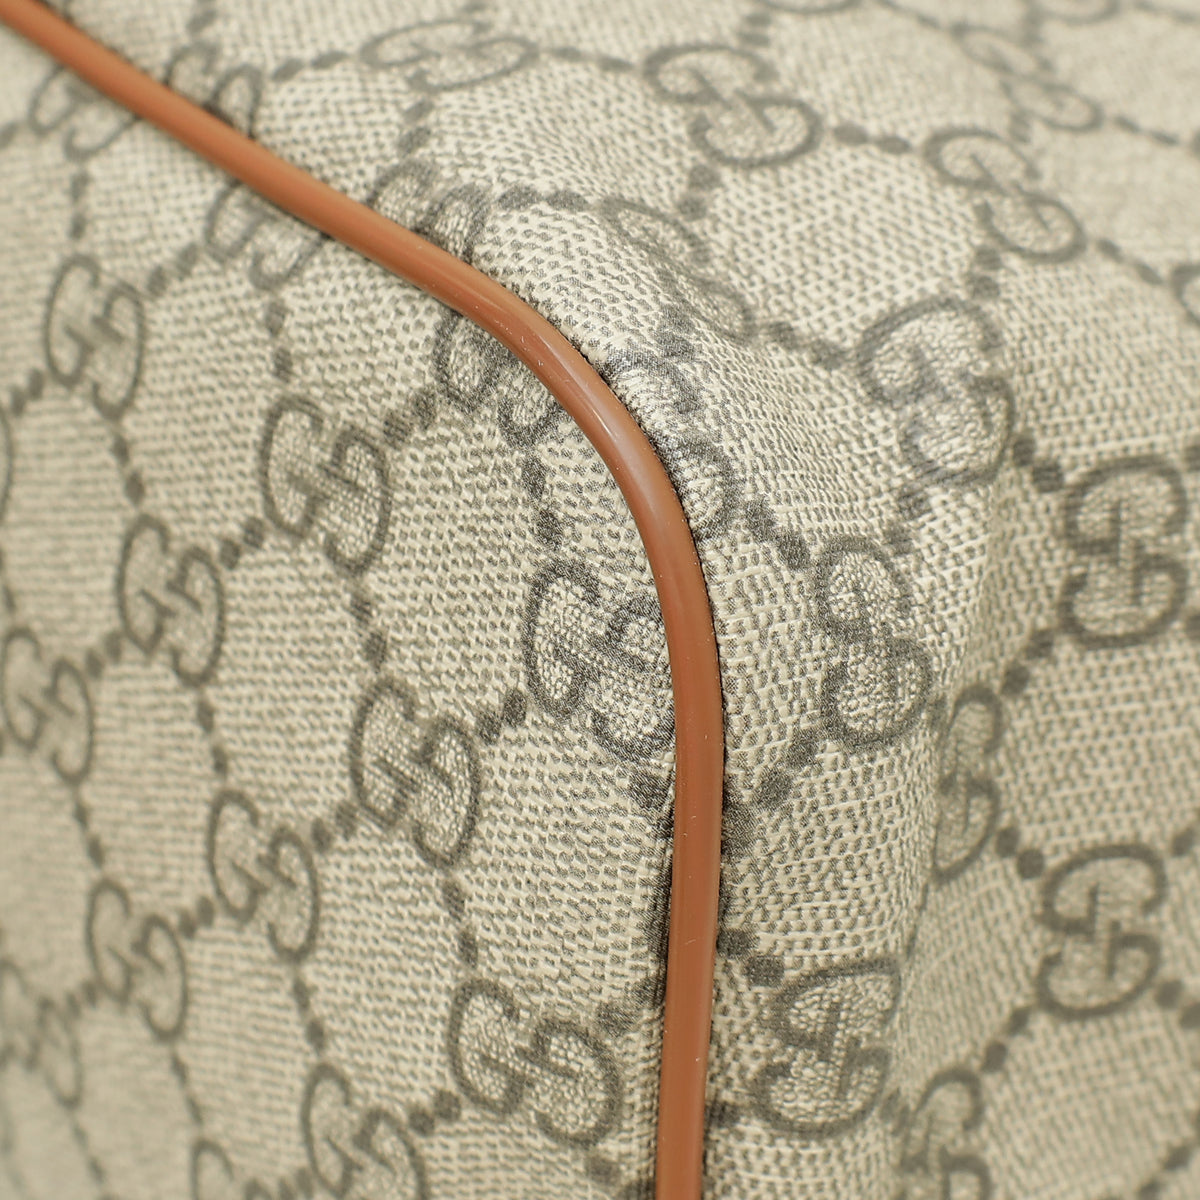 Gucci Bicolor Soft GG Supreme Floral/Bird Embroidered Ltd. Ed. Tote Bag